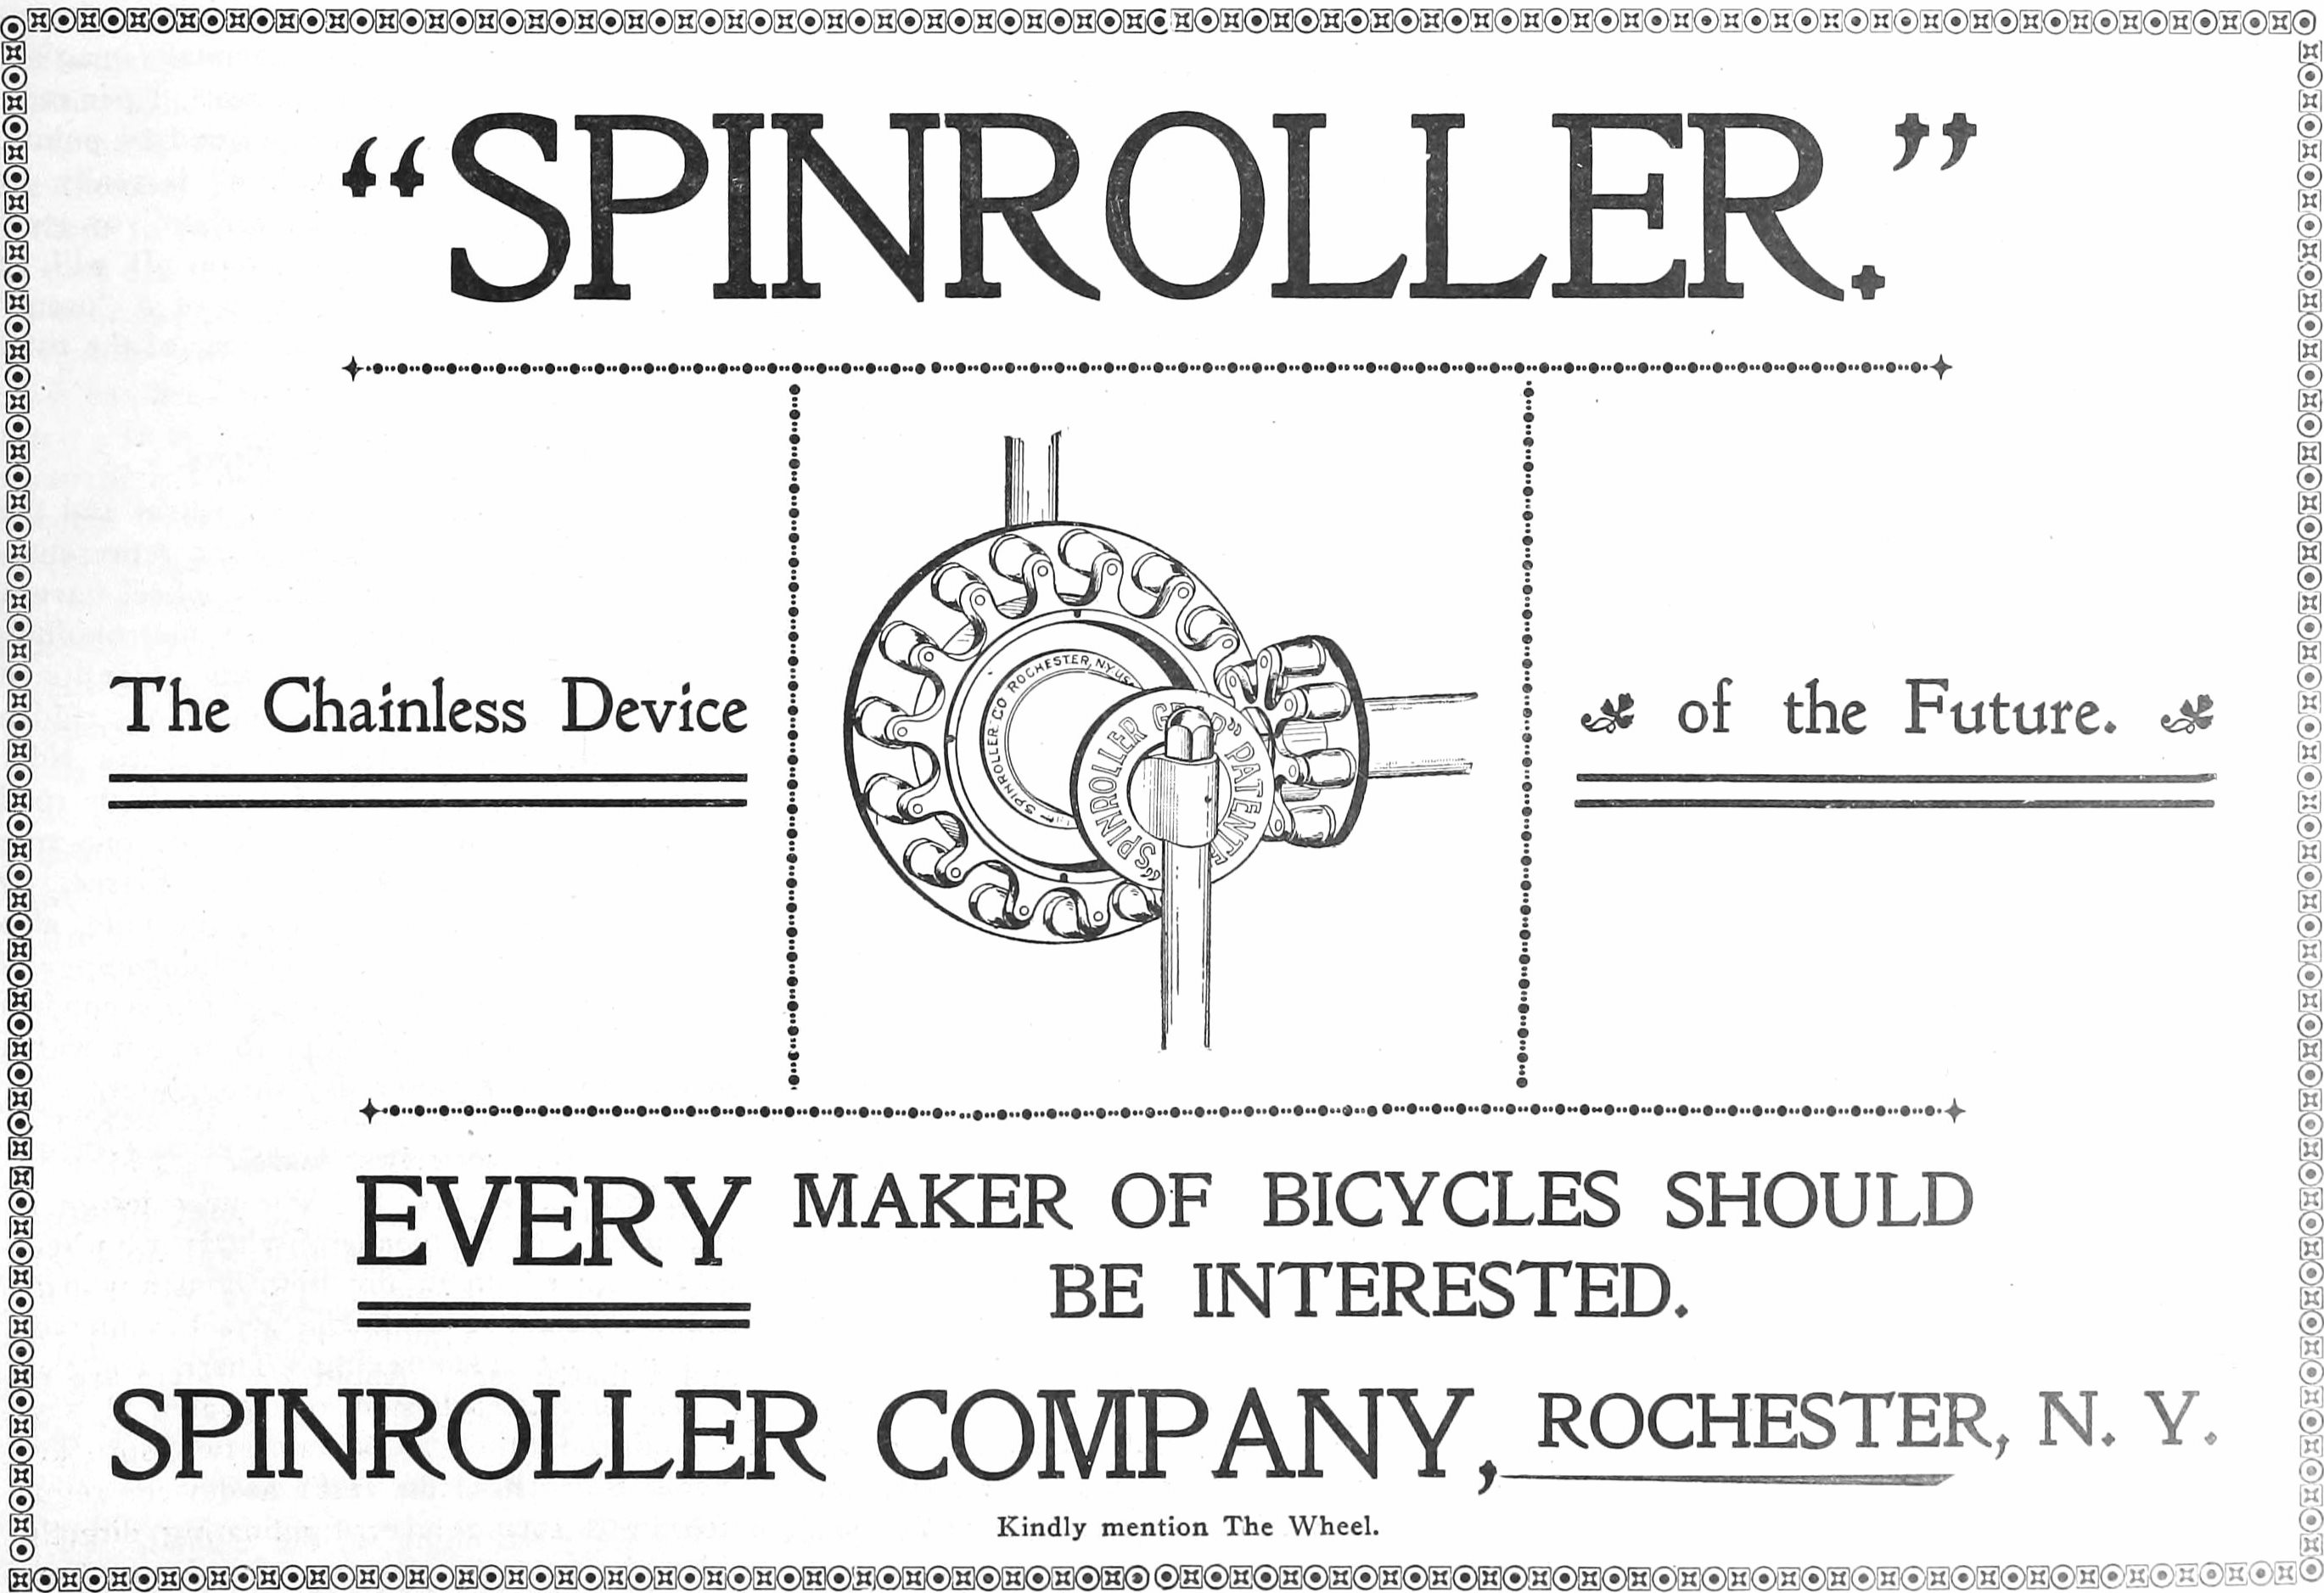 Spinroller 1899 300.jpg